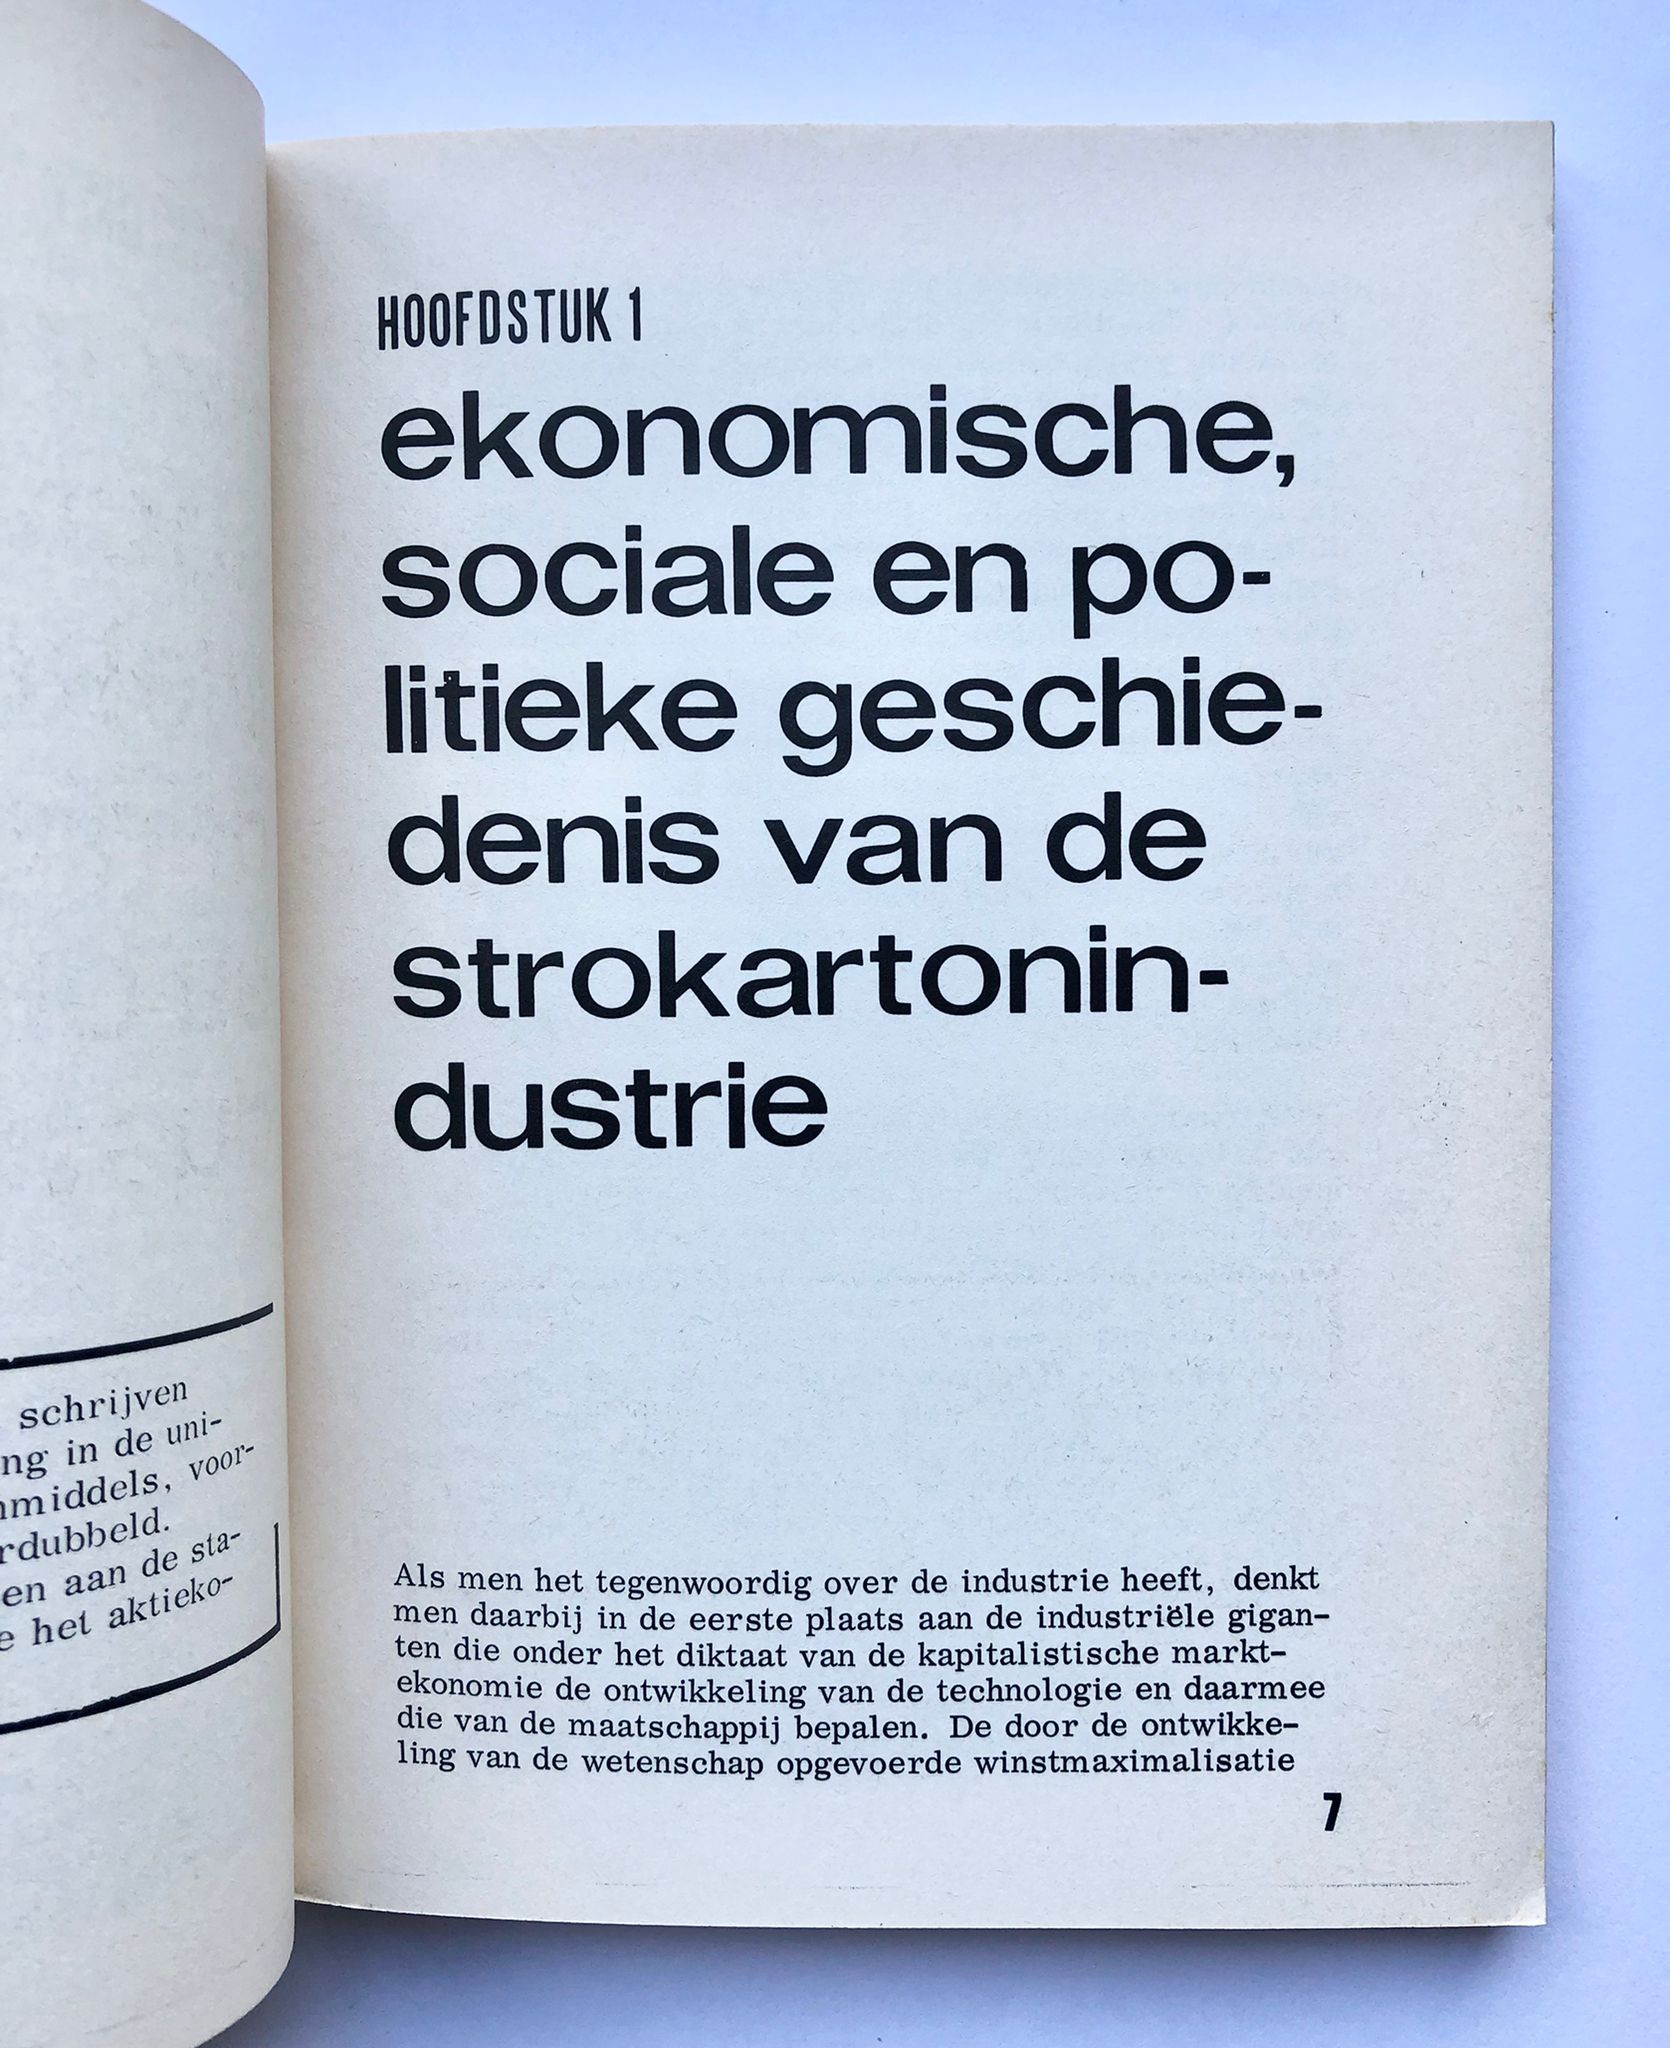 [Groningen [1969]] 100 jaar uitbuiting in de strokarton, projectgroep strokarton, Socialistische uitgeverij Nijmegen, Groningen [1969], 132 pp.